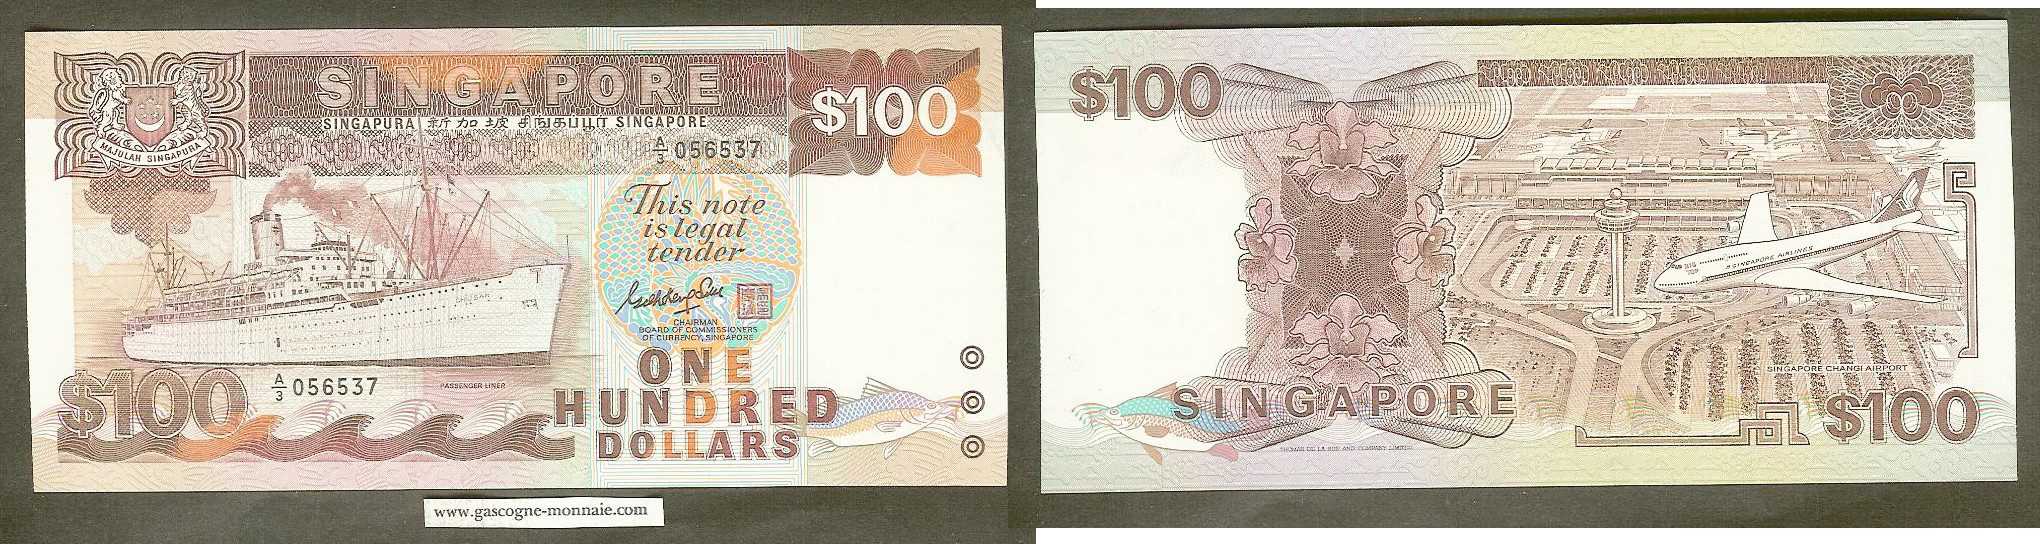 Singapore $100 1985 P 23a Unc